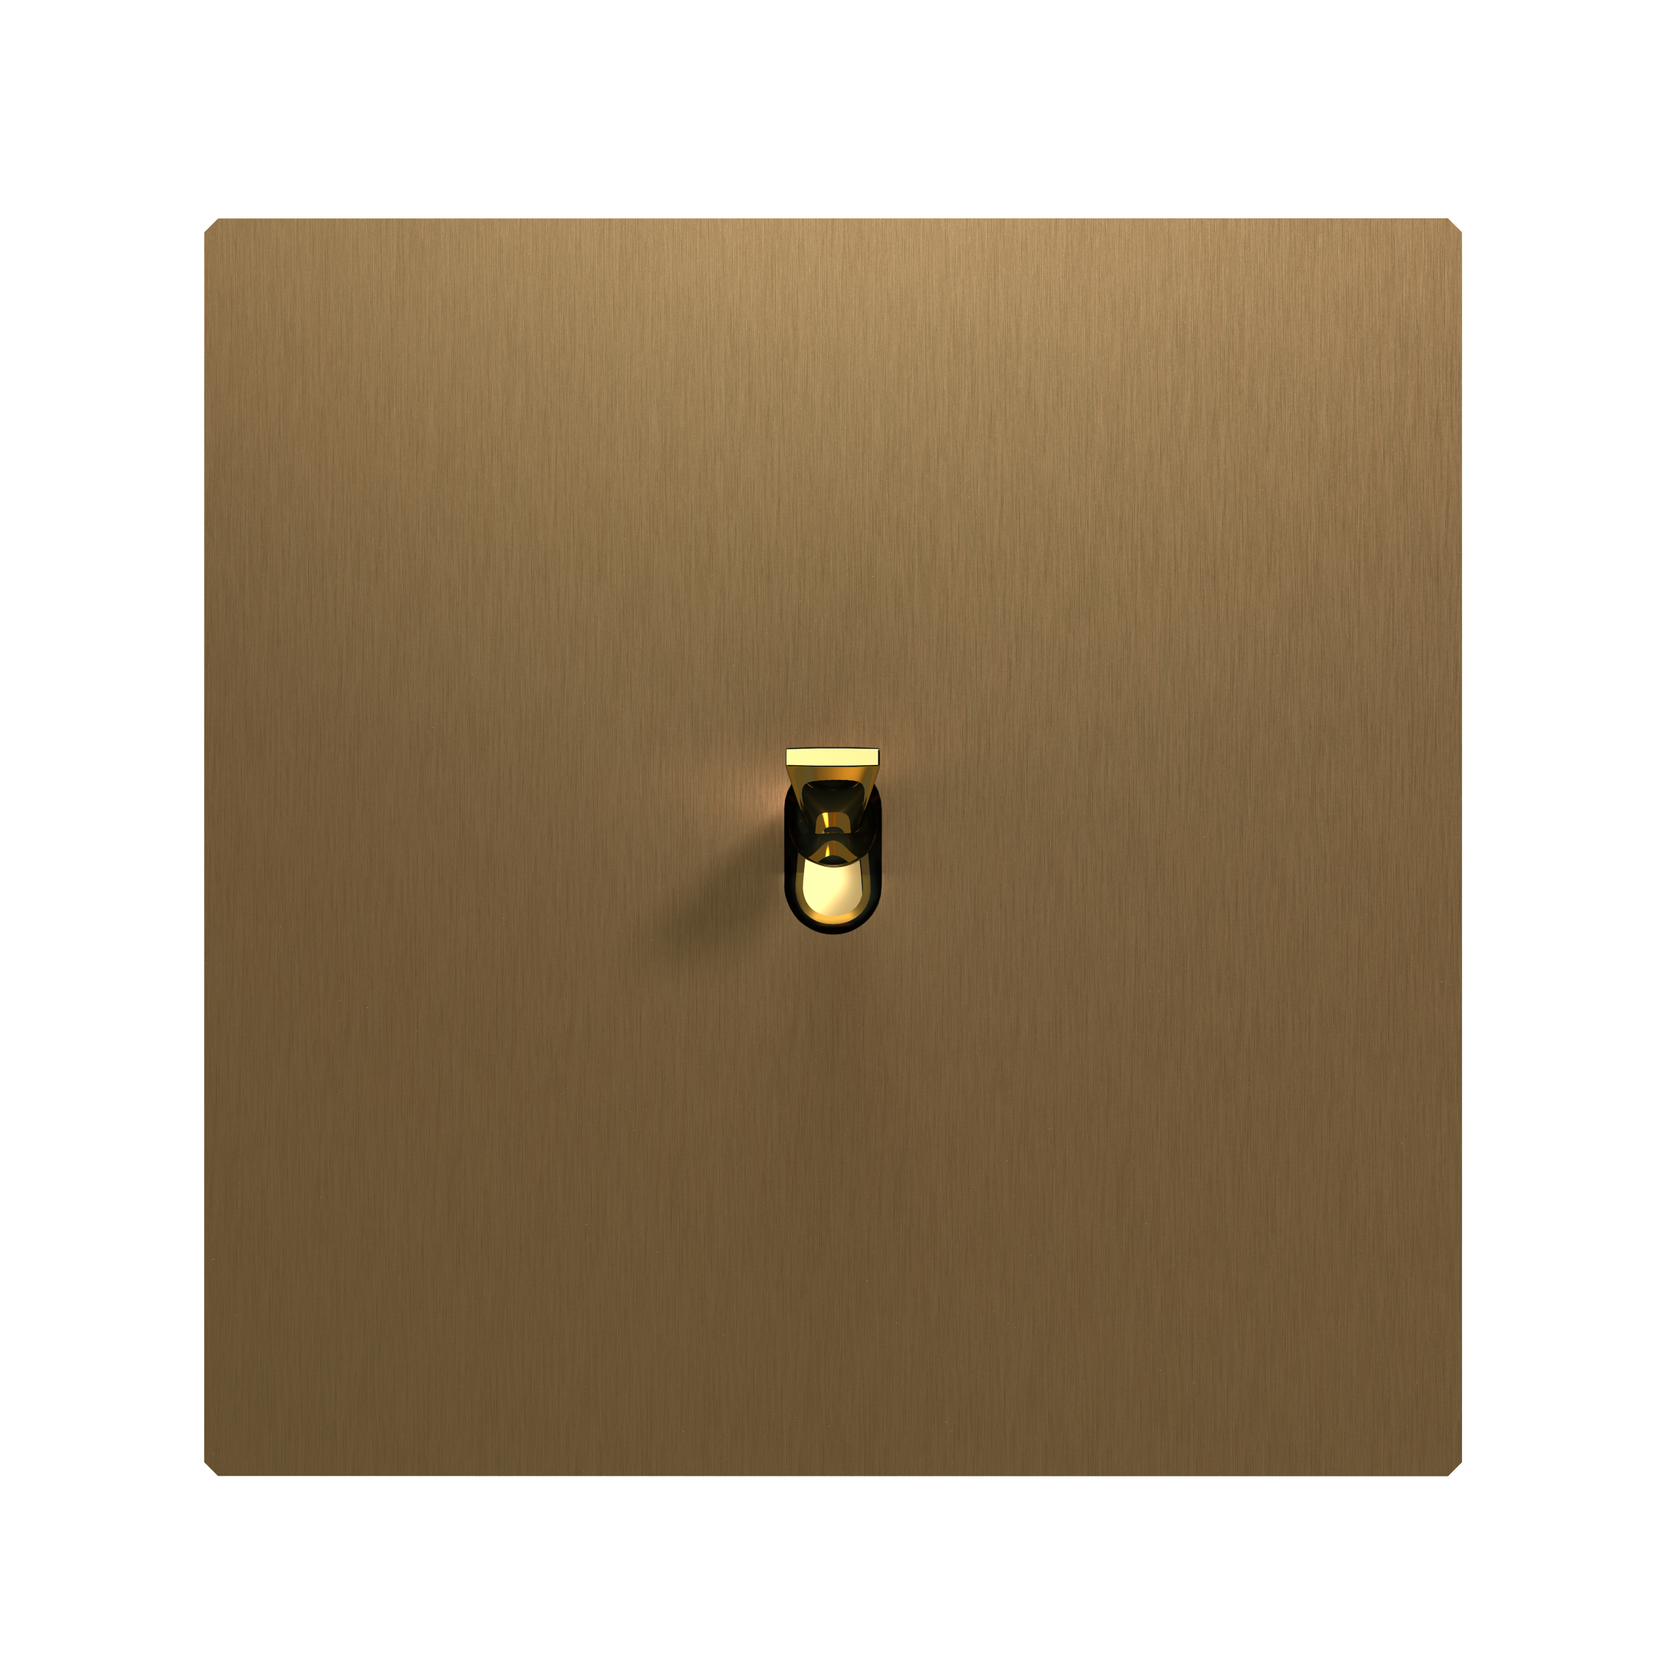 5.1 strömbrytare i bronserad mässing med blank guldknapp